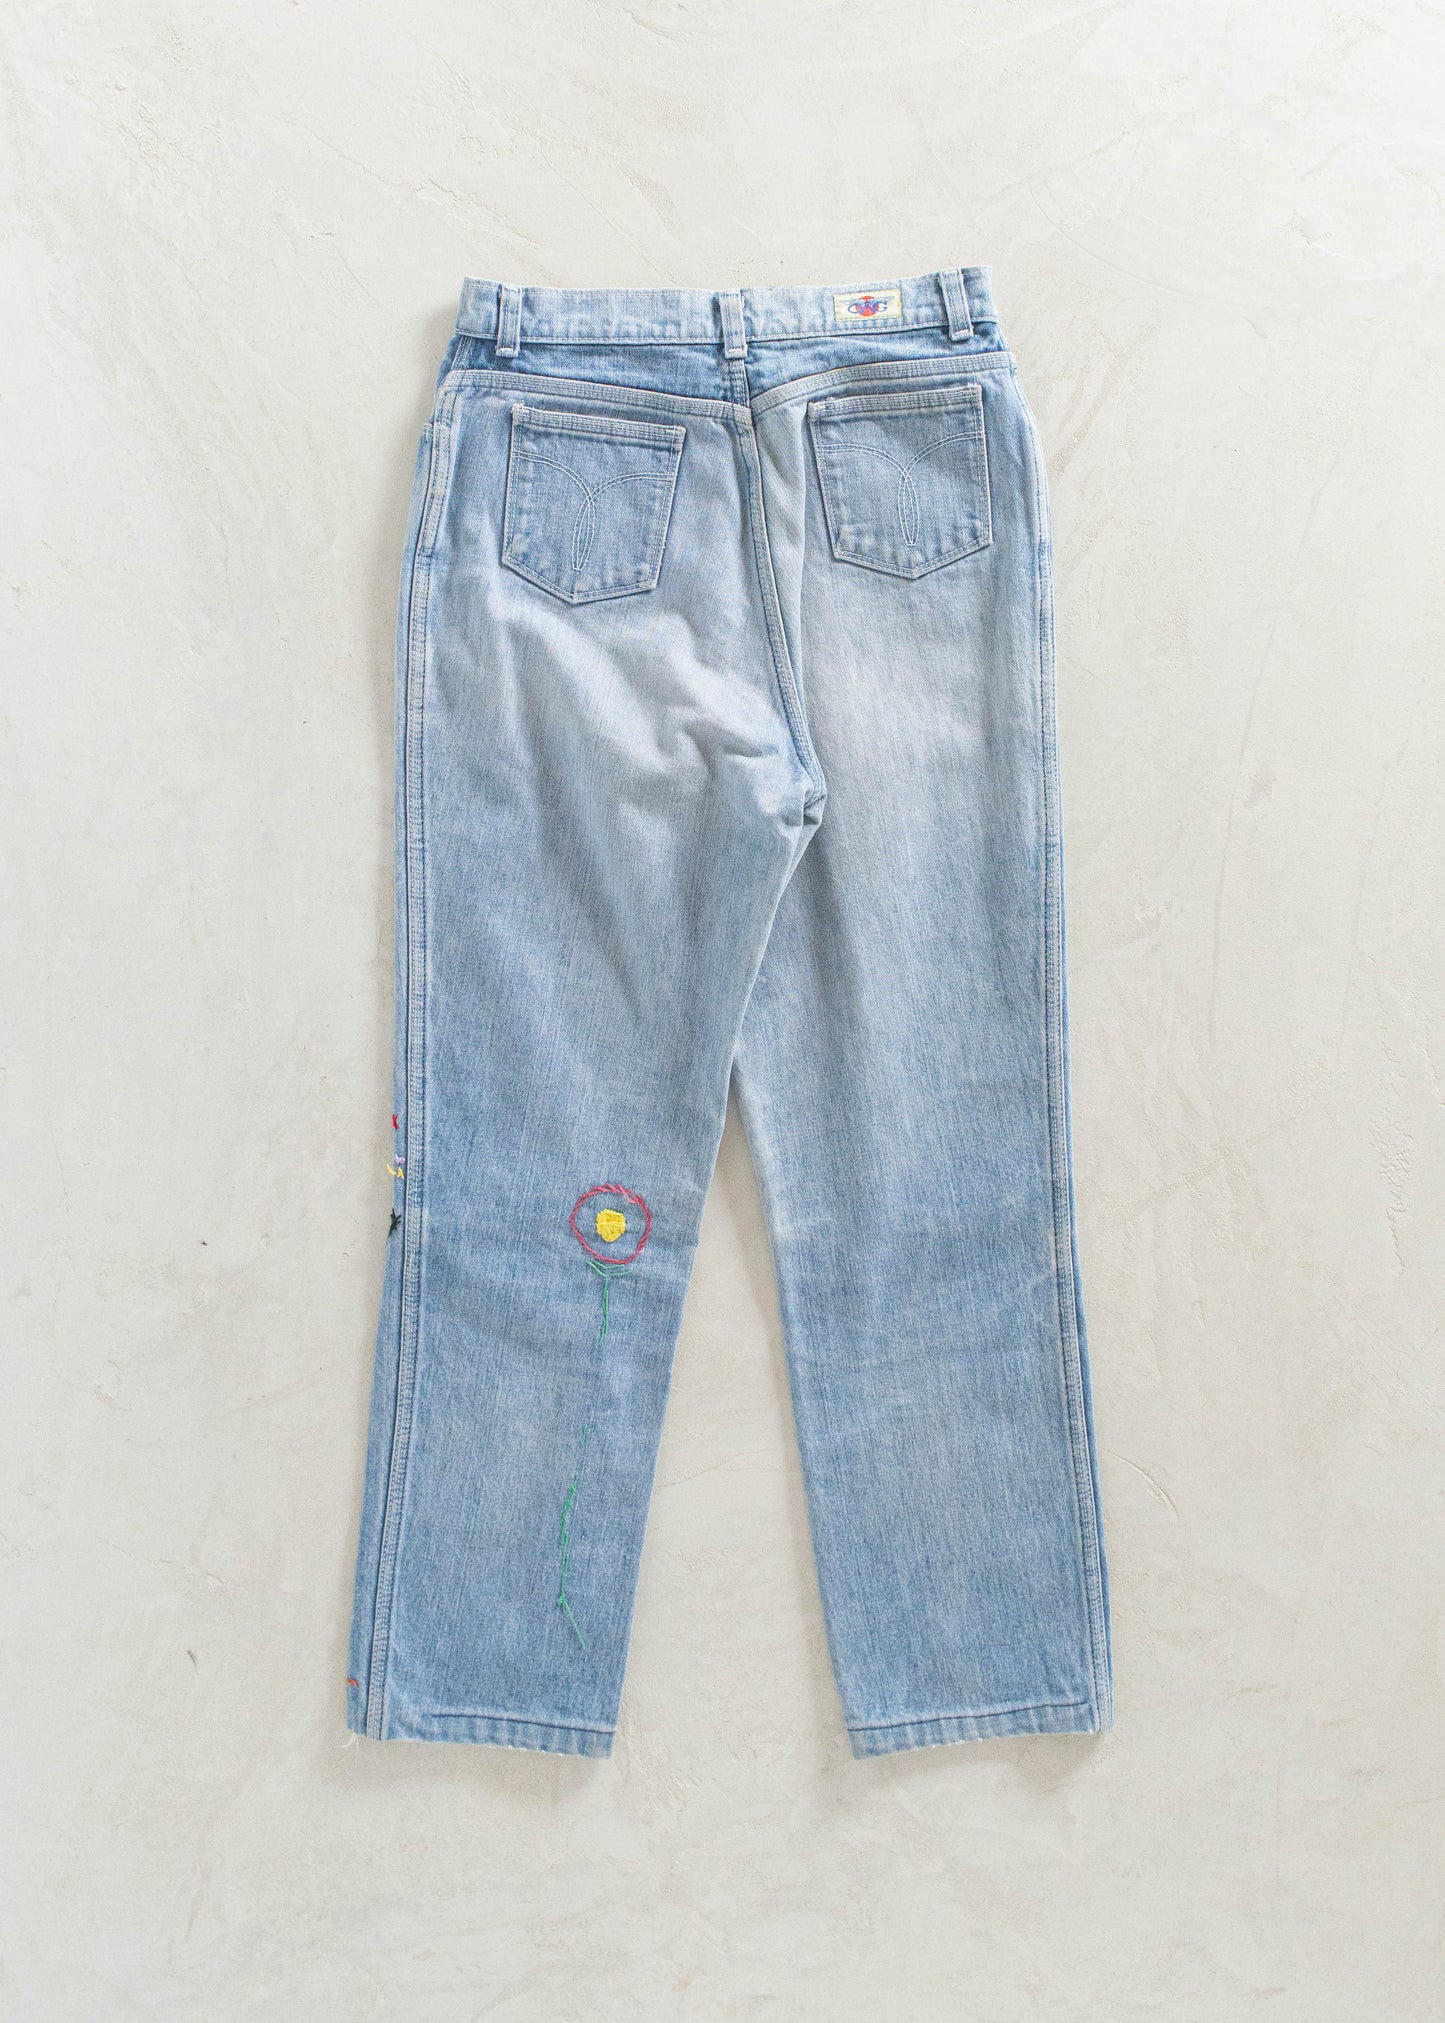 Vintage 1970s GWG Lightwash Embroidered Jeans Size Women's 26 Men's 30